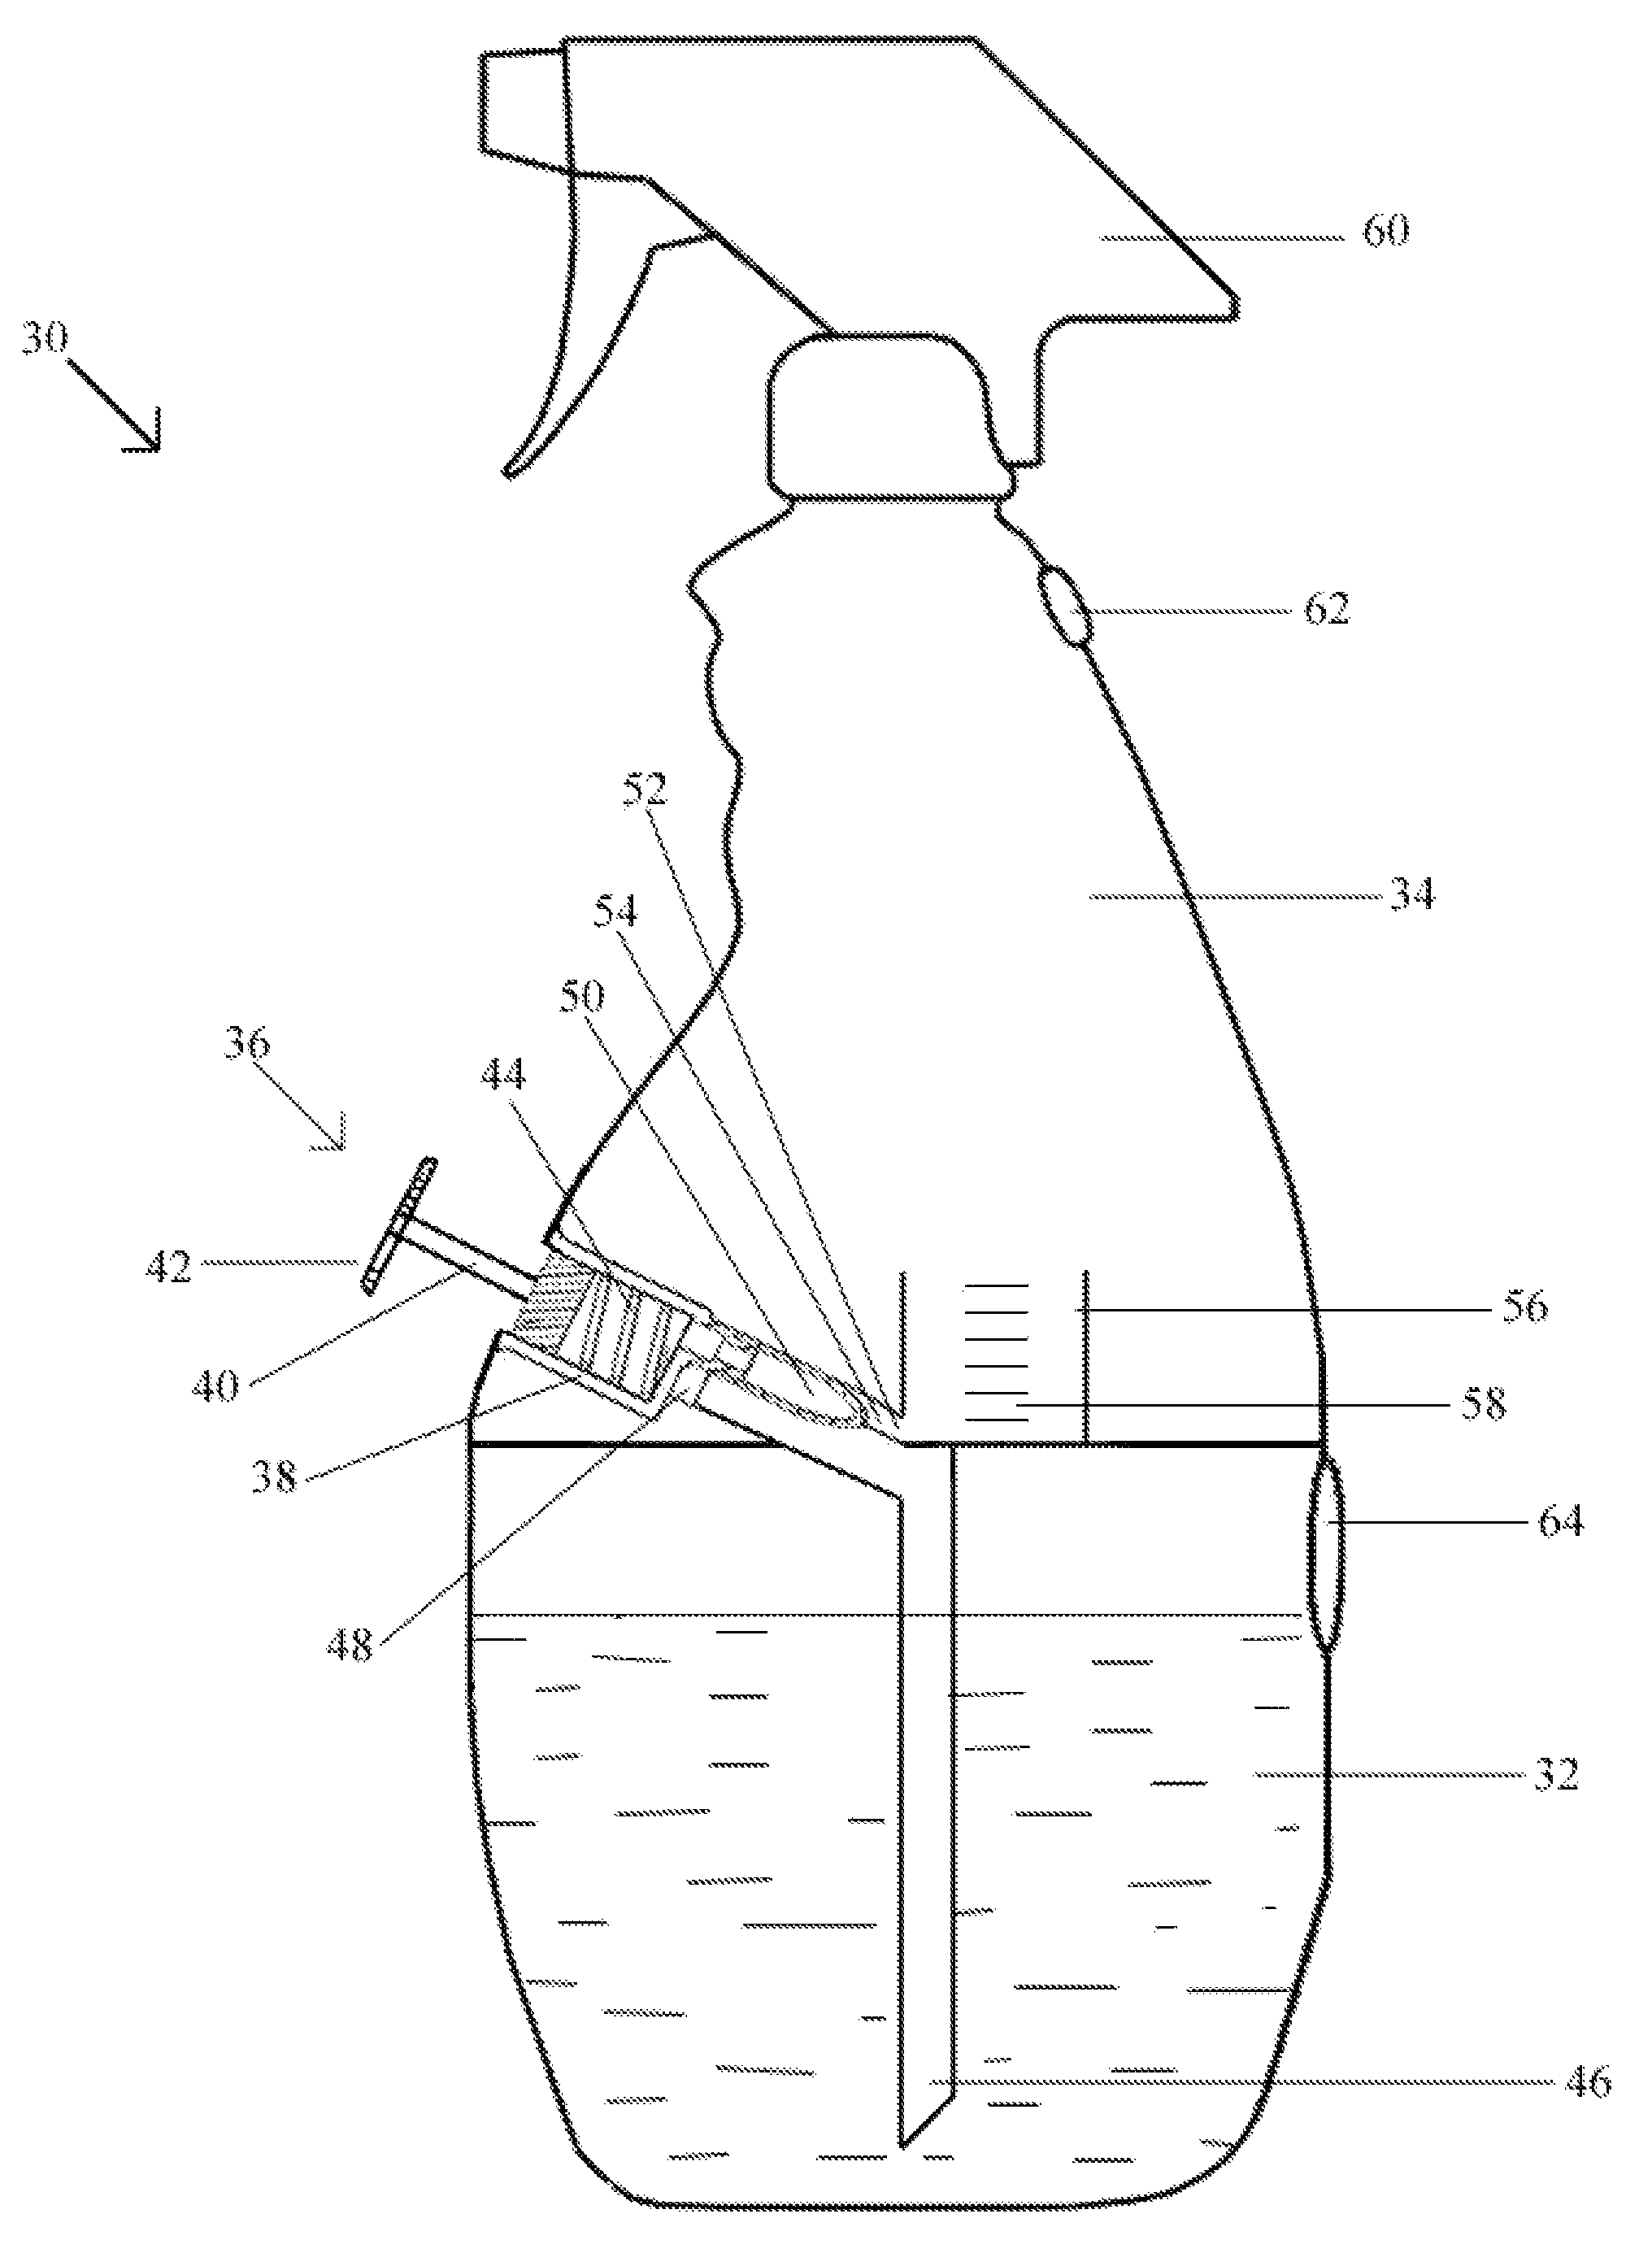 Refillable/reusable mixer bottle